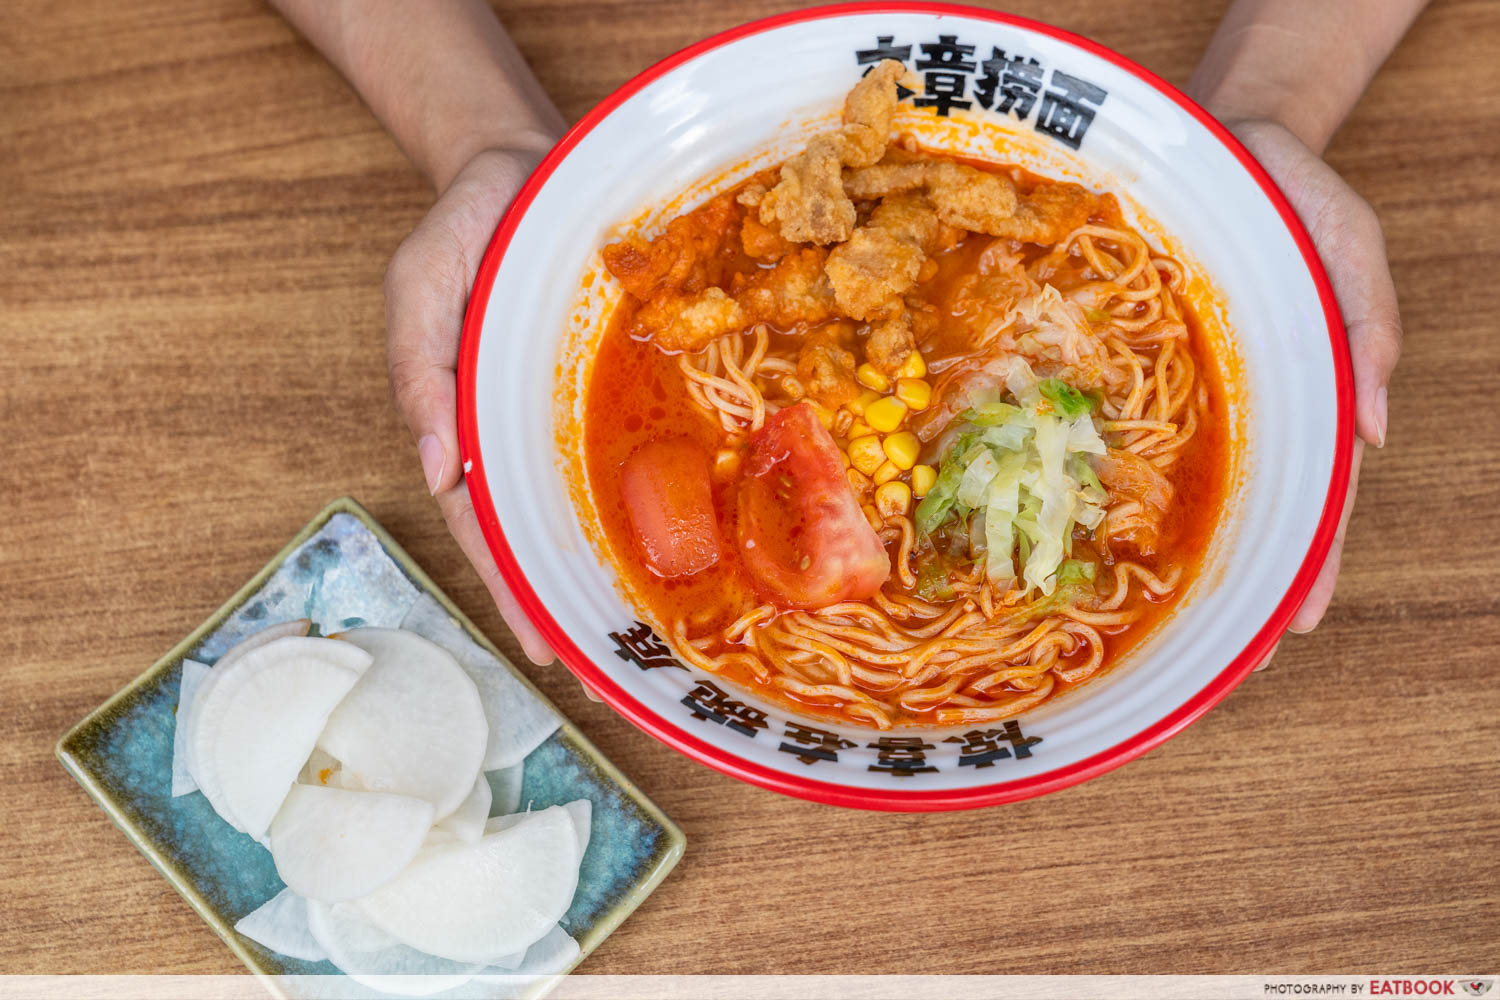 wen-zhang-lao-mian-tomato-fried-pork-noodles